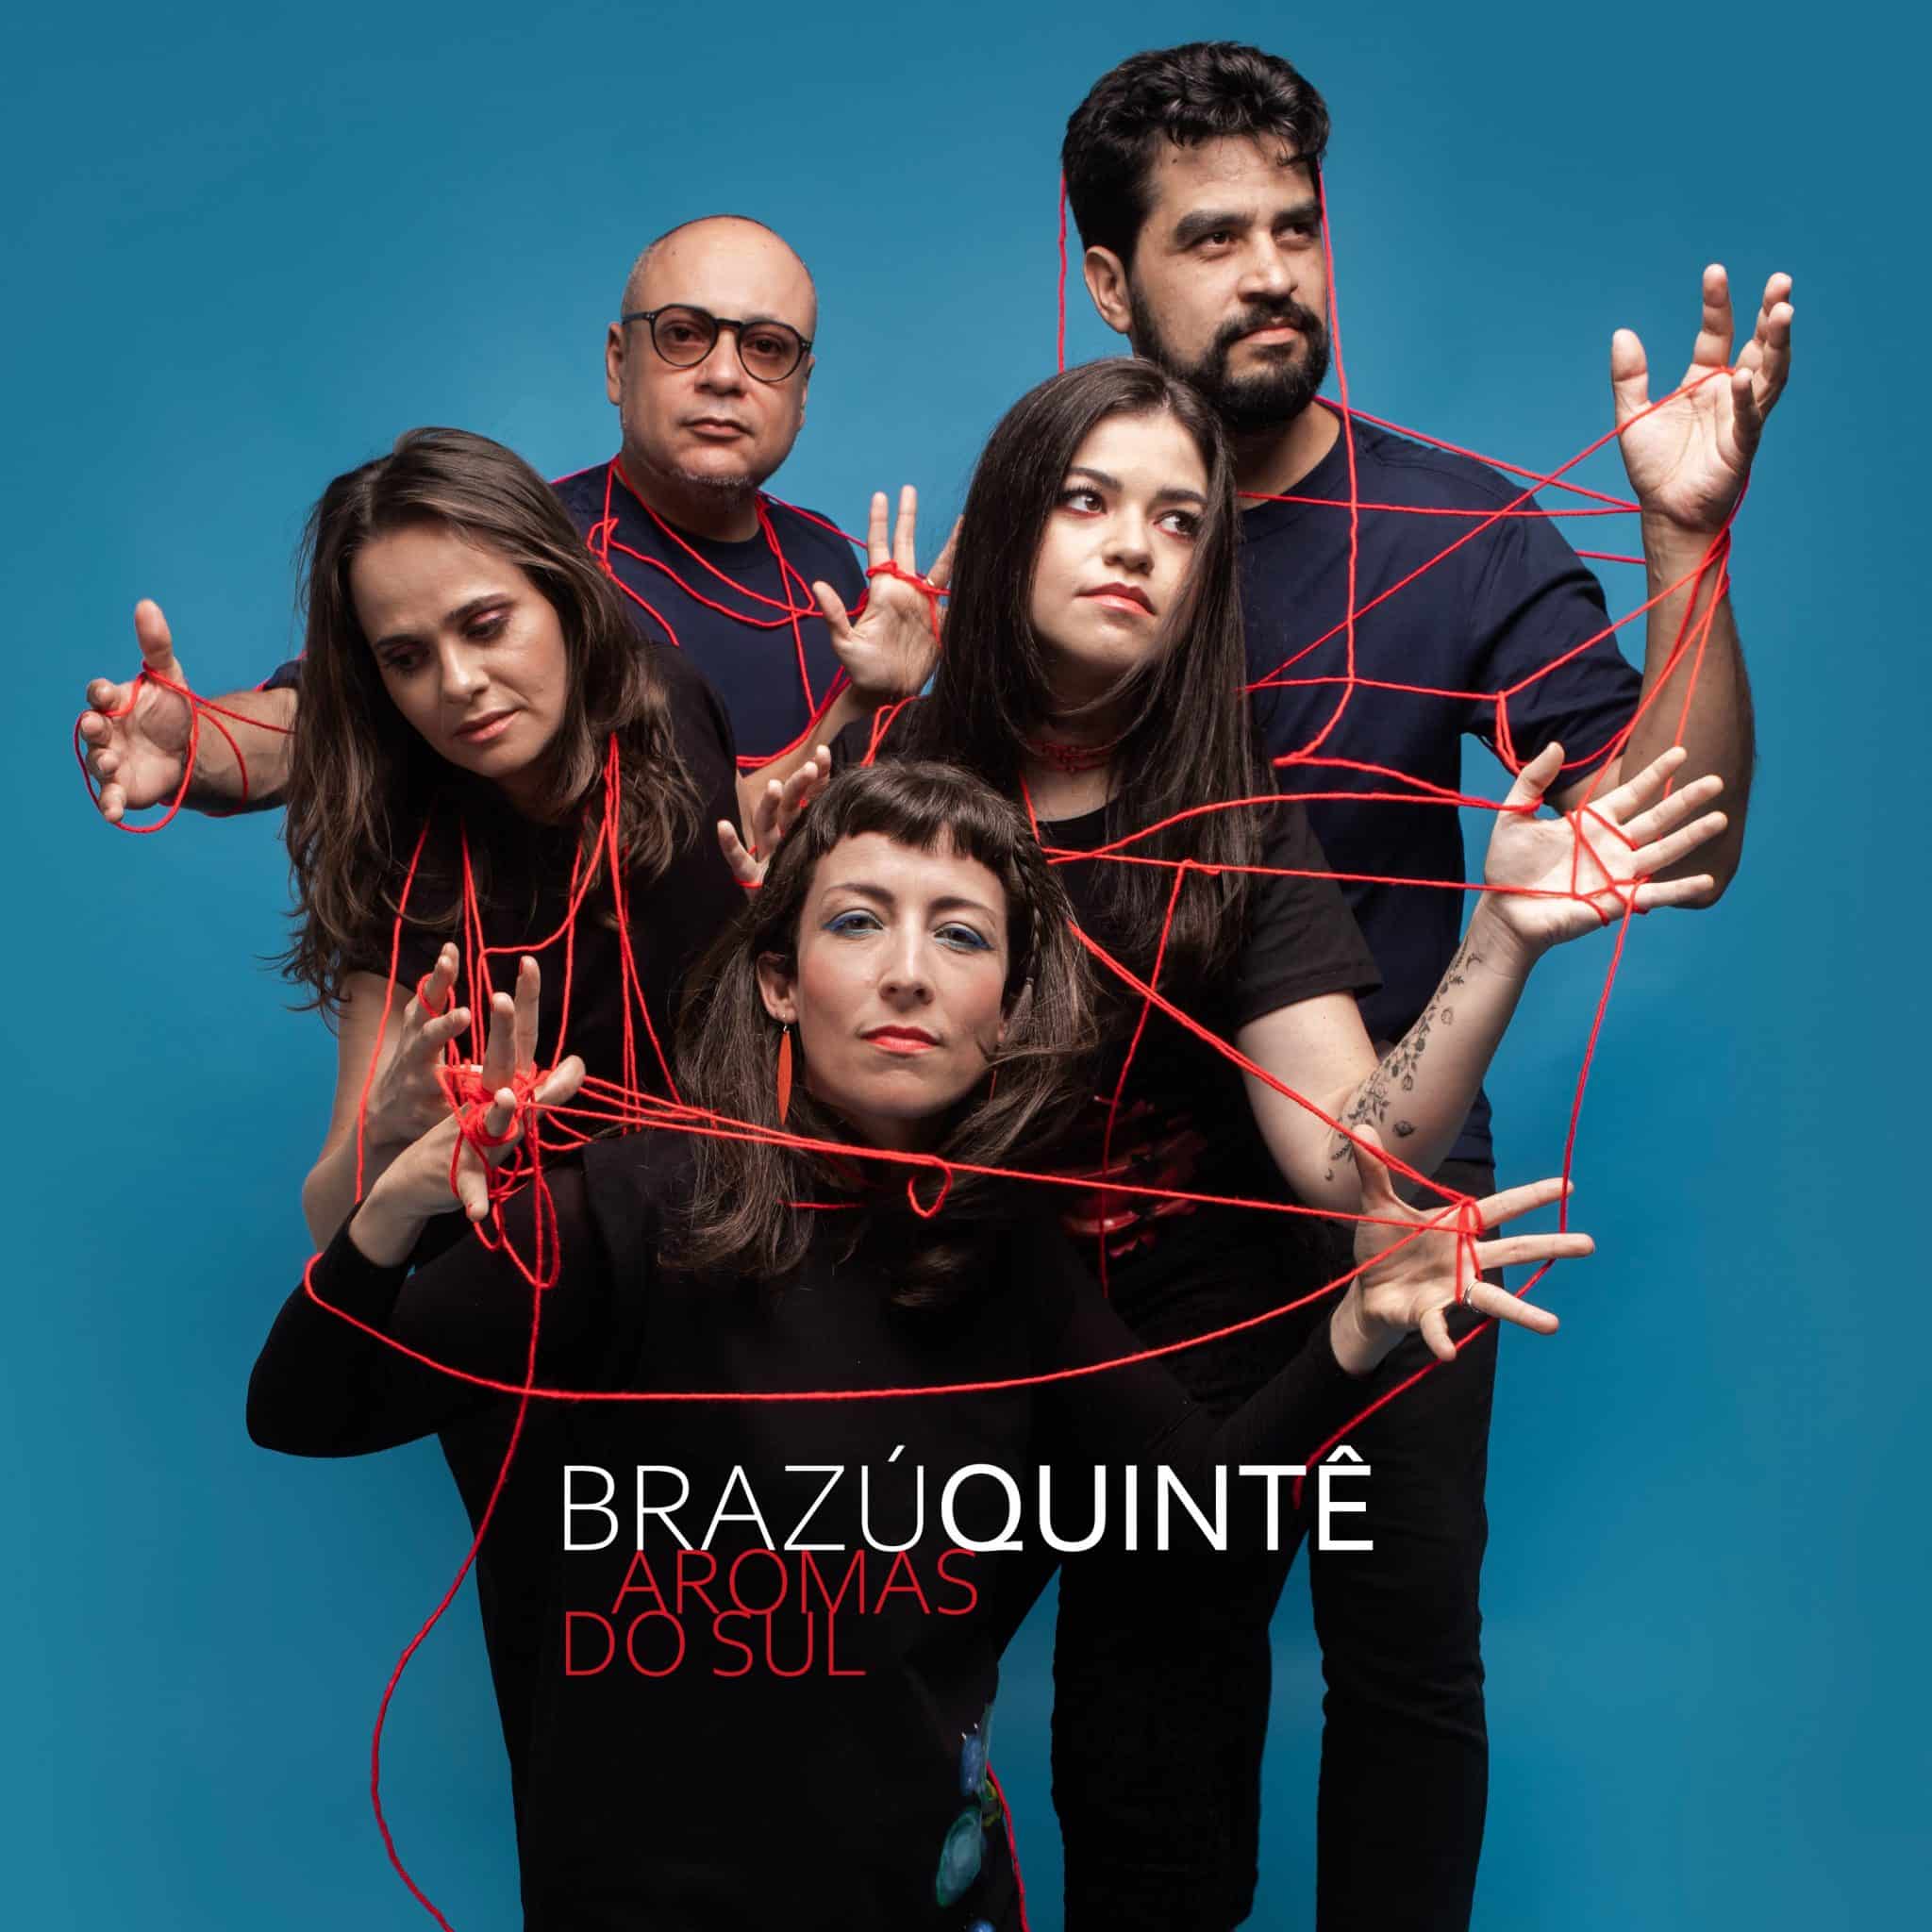 revistaprosaversoearte.com - 'Aromas do Sul' single do grupo Brazú Quintê